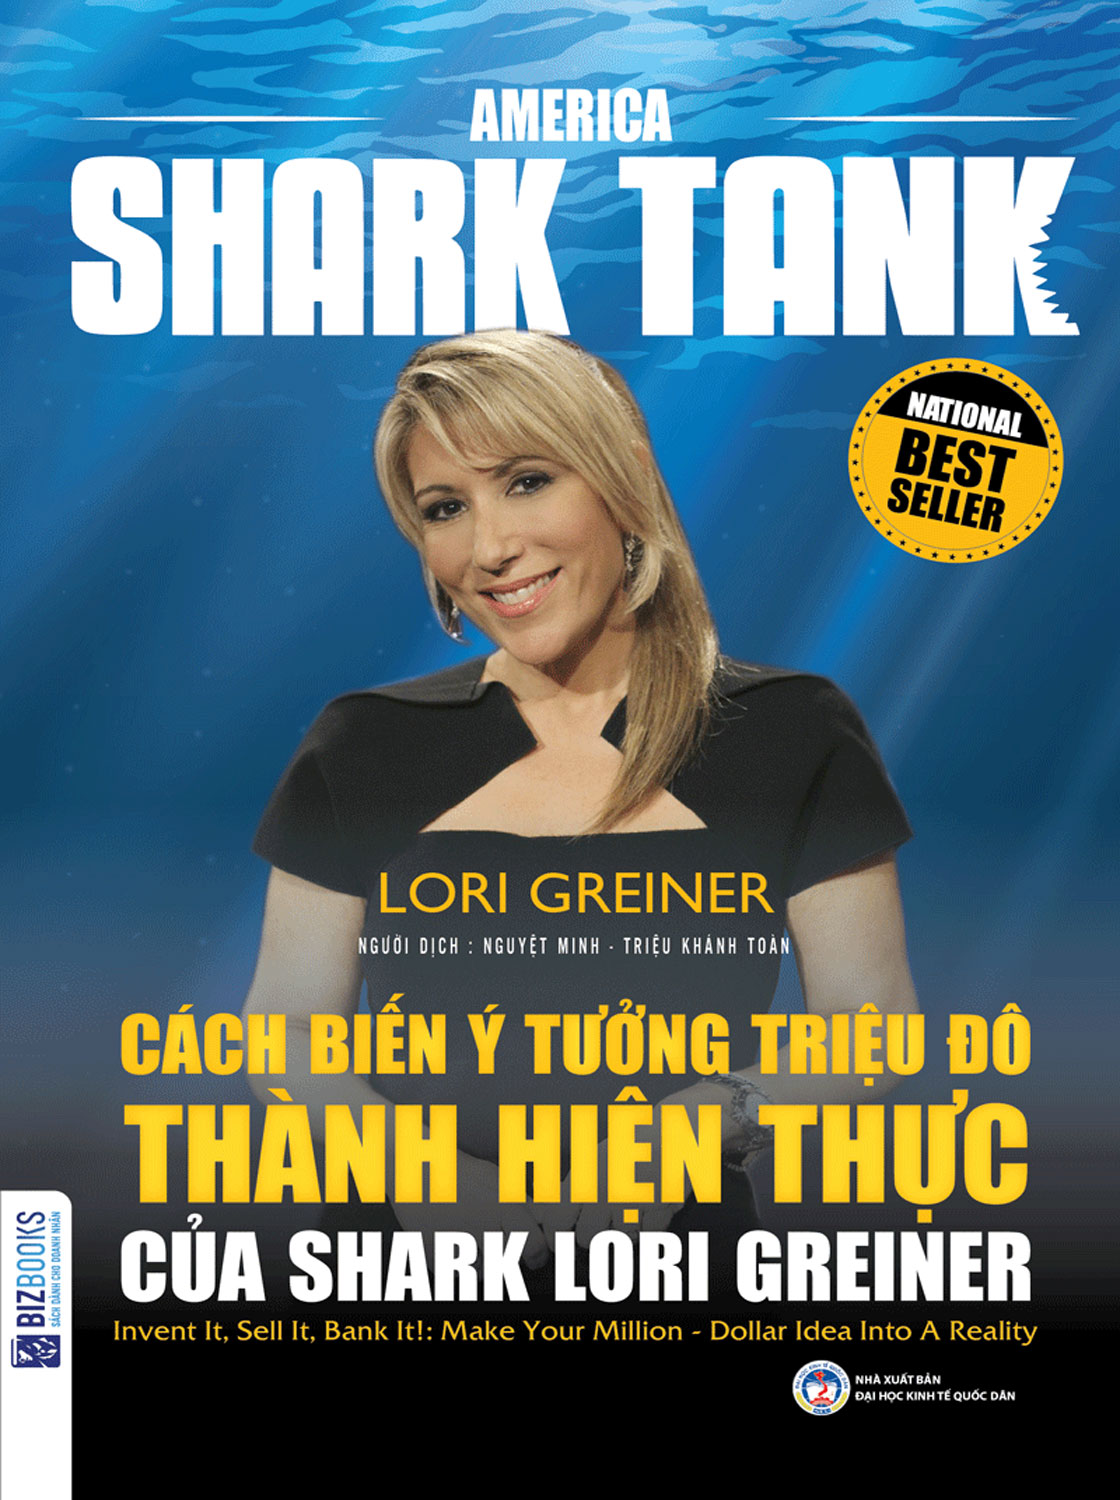 America Shark Tank: Cách Biến Ý Tưởng Triệu Đô Thành Hiện Thực Của Shark Lori Greiner